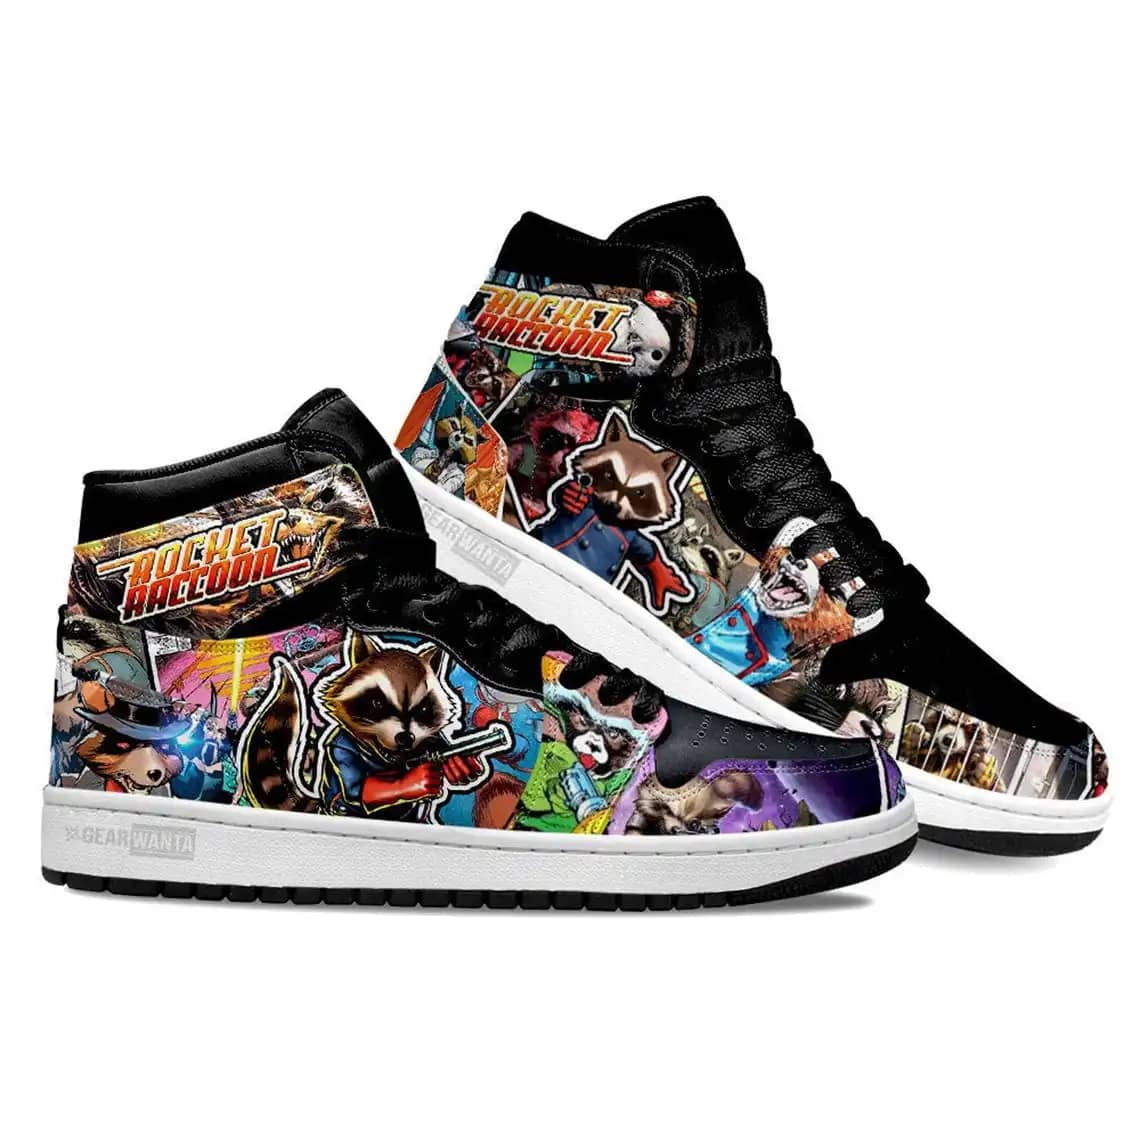 Avenger Rocket Super Heroes For Movie Fans - Custom Anime Sneaker For Men And Women Air Jordan Shoes